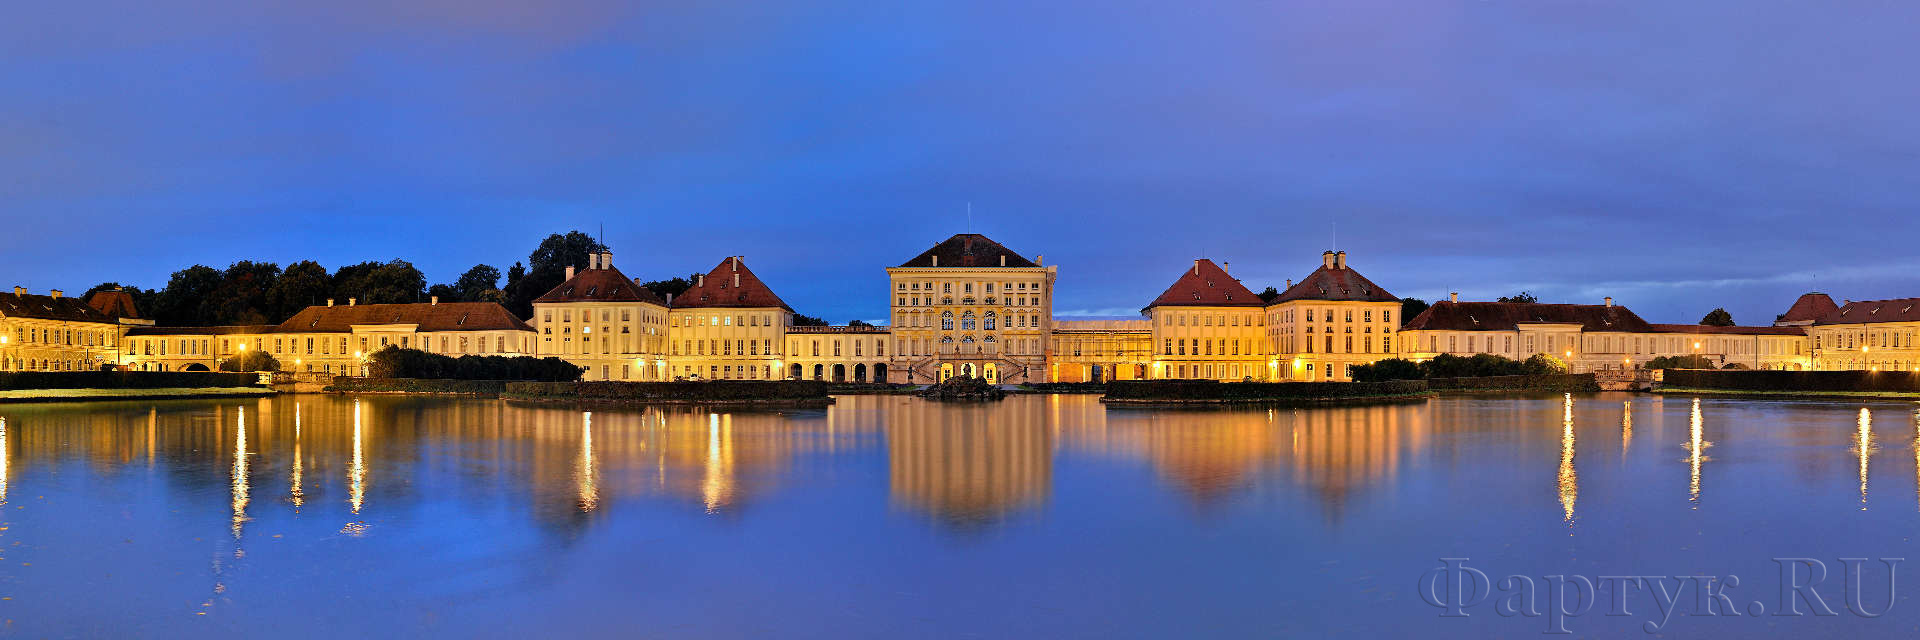 Дворец Нимфенбург, Германия